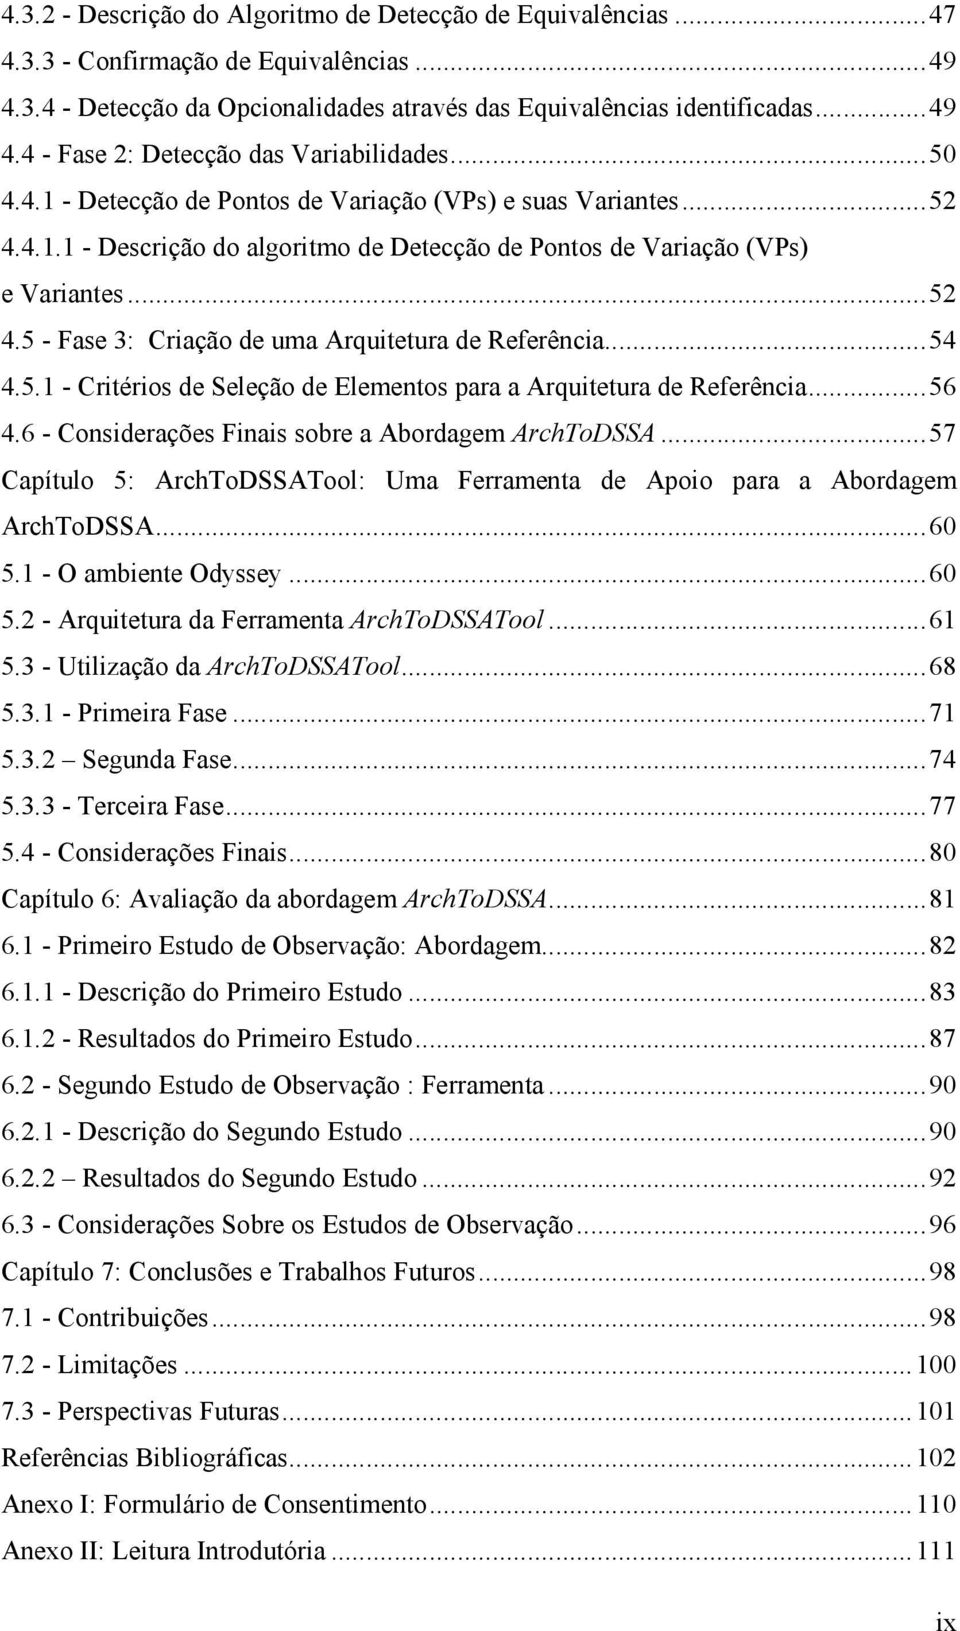 ..54 4.5.1 - Critérios de Seleção de Elementos para a Arquitetura de Referência...56 4.6 - Considerações Finais sobre a Abordagem ArchToDSSA.